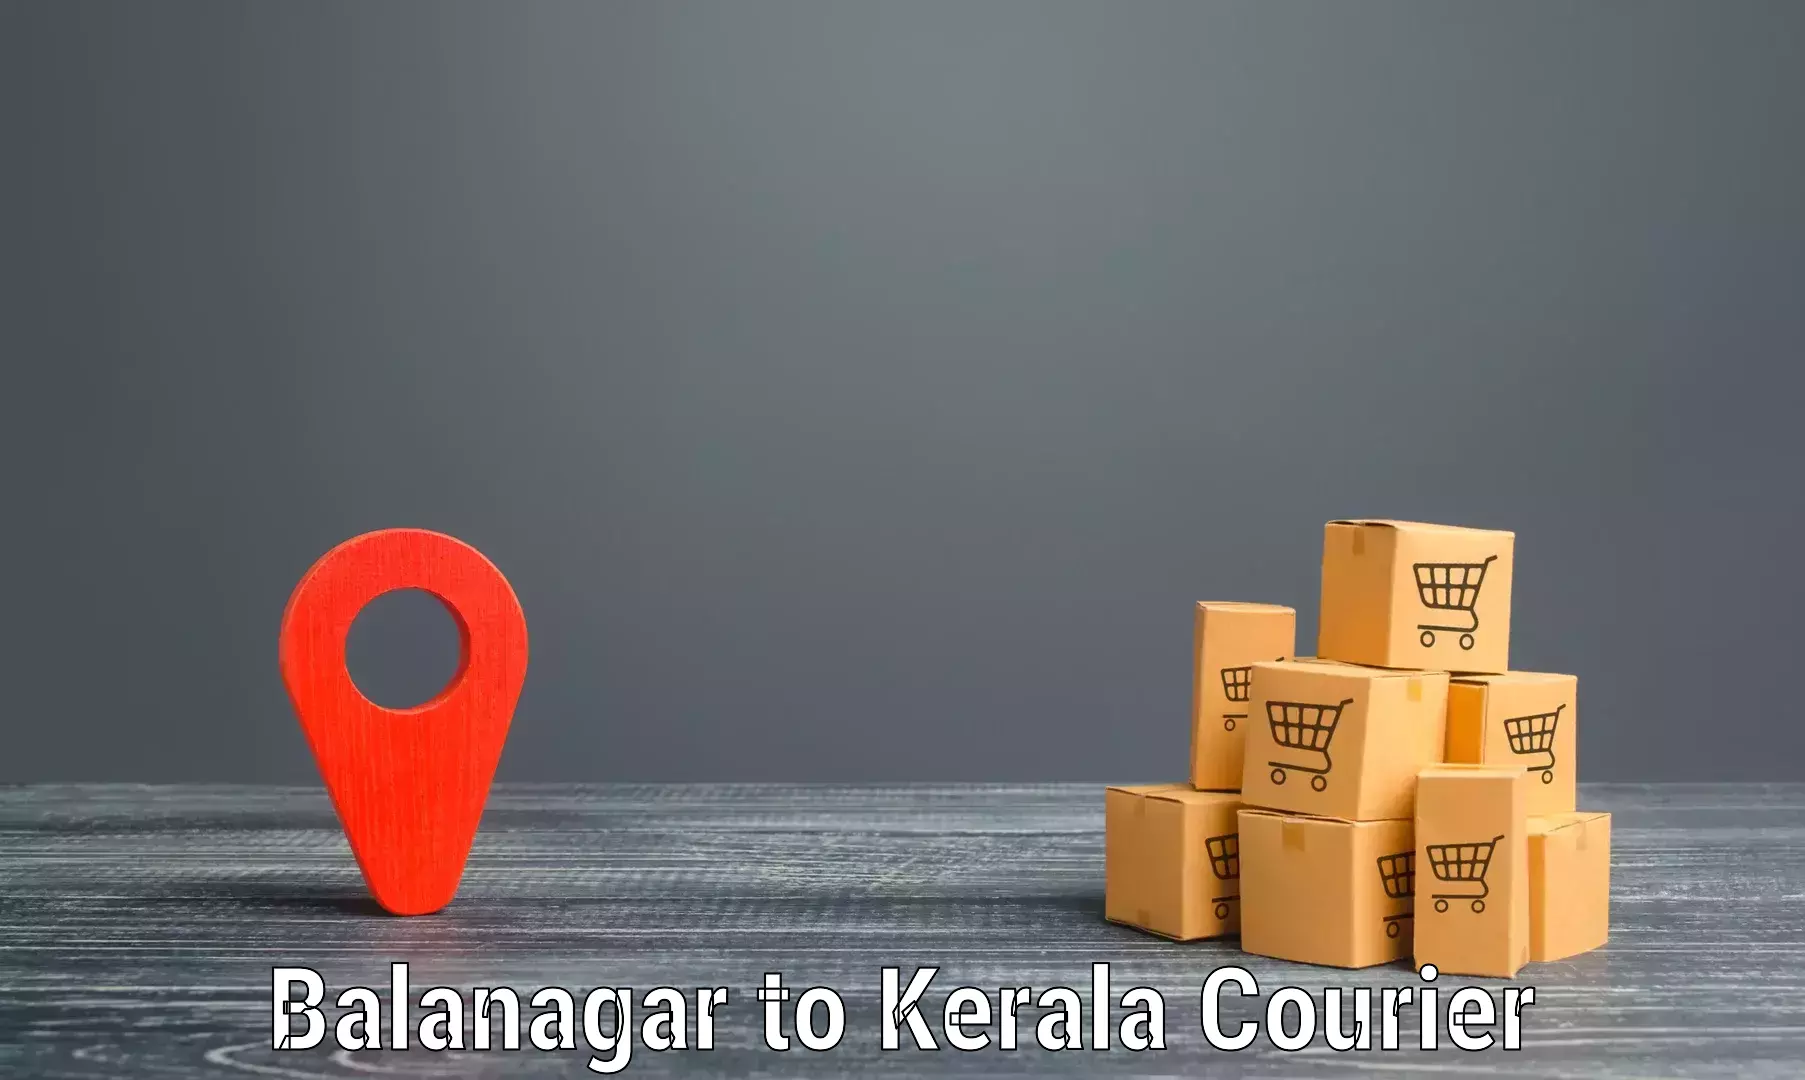 24/7 shipping services Balanagar to Kochi